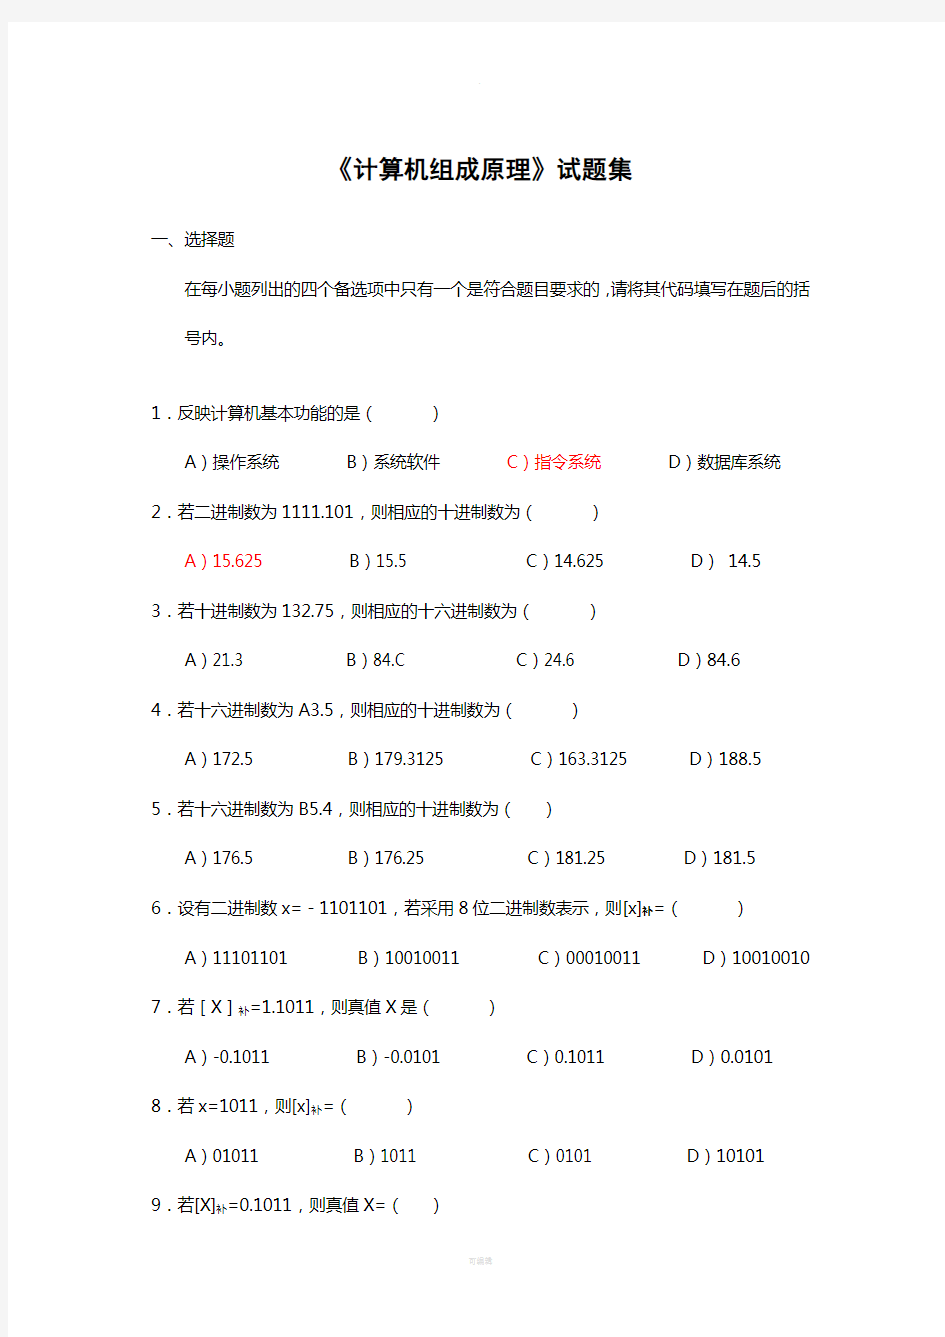 重庆大学计算机组成原理试题集(含部分答案)